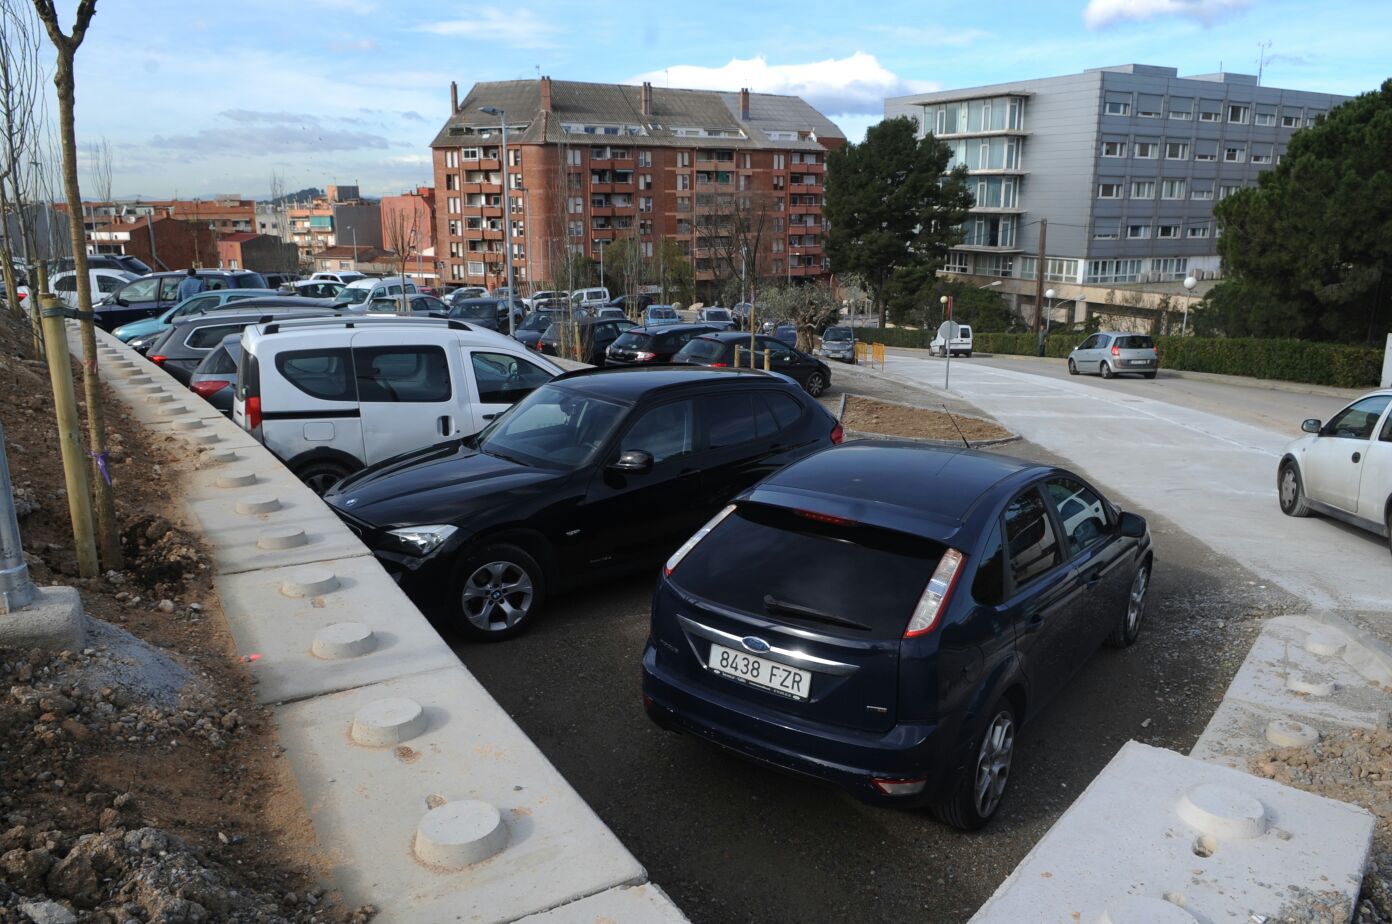 El nou aparcament públic de Torre Pinós, a tocar de l'Hospital, estrenat al març